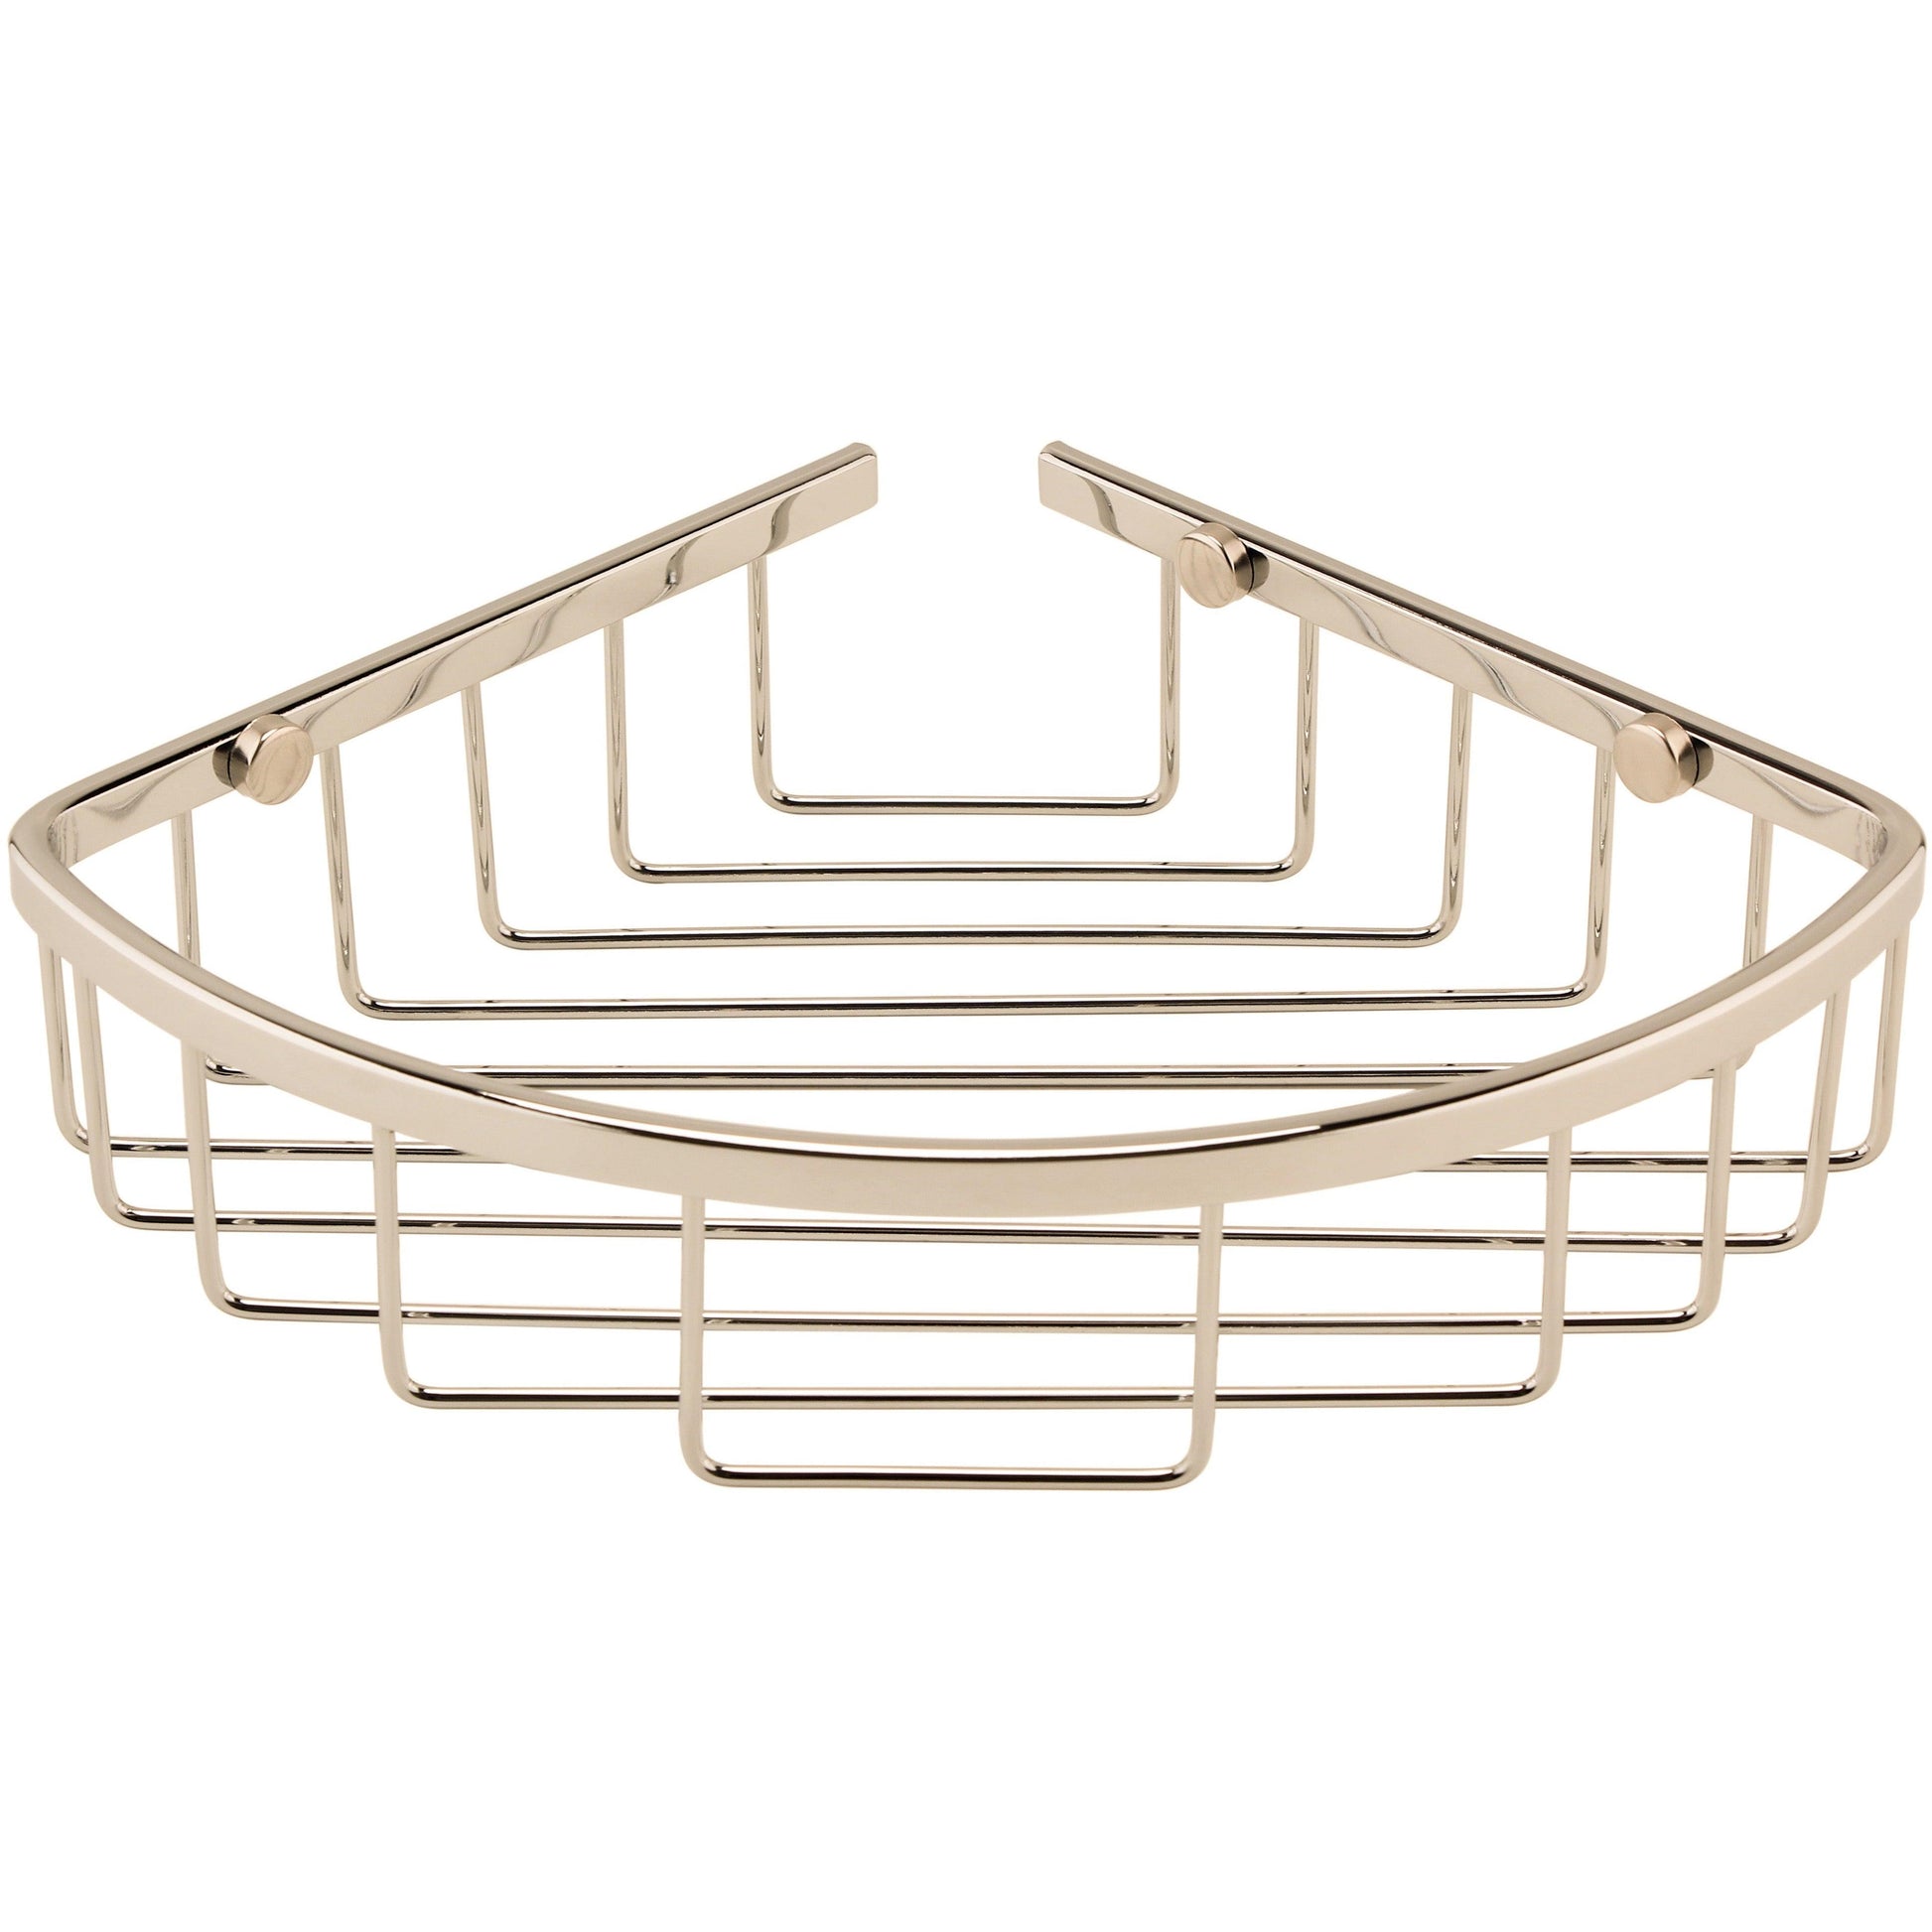 Victrion Brass Corner Shower Basket - Bilden Home & Hardware Market